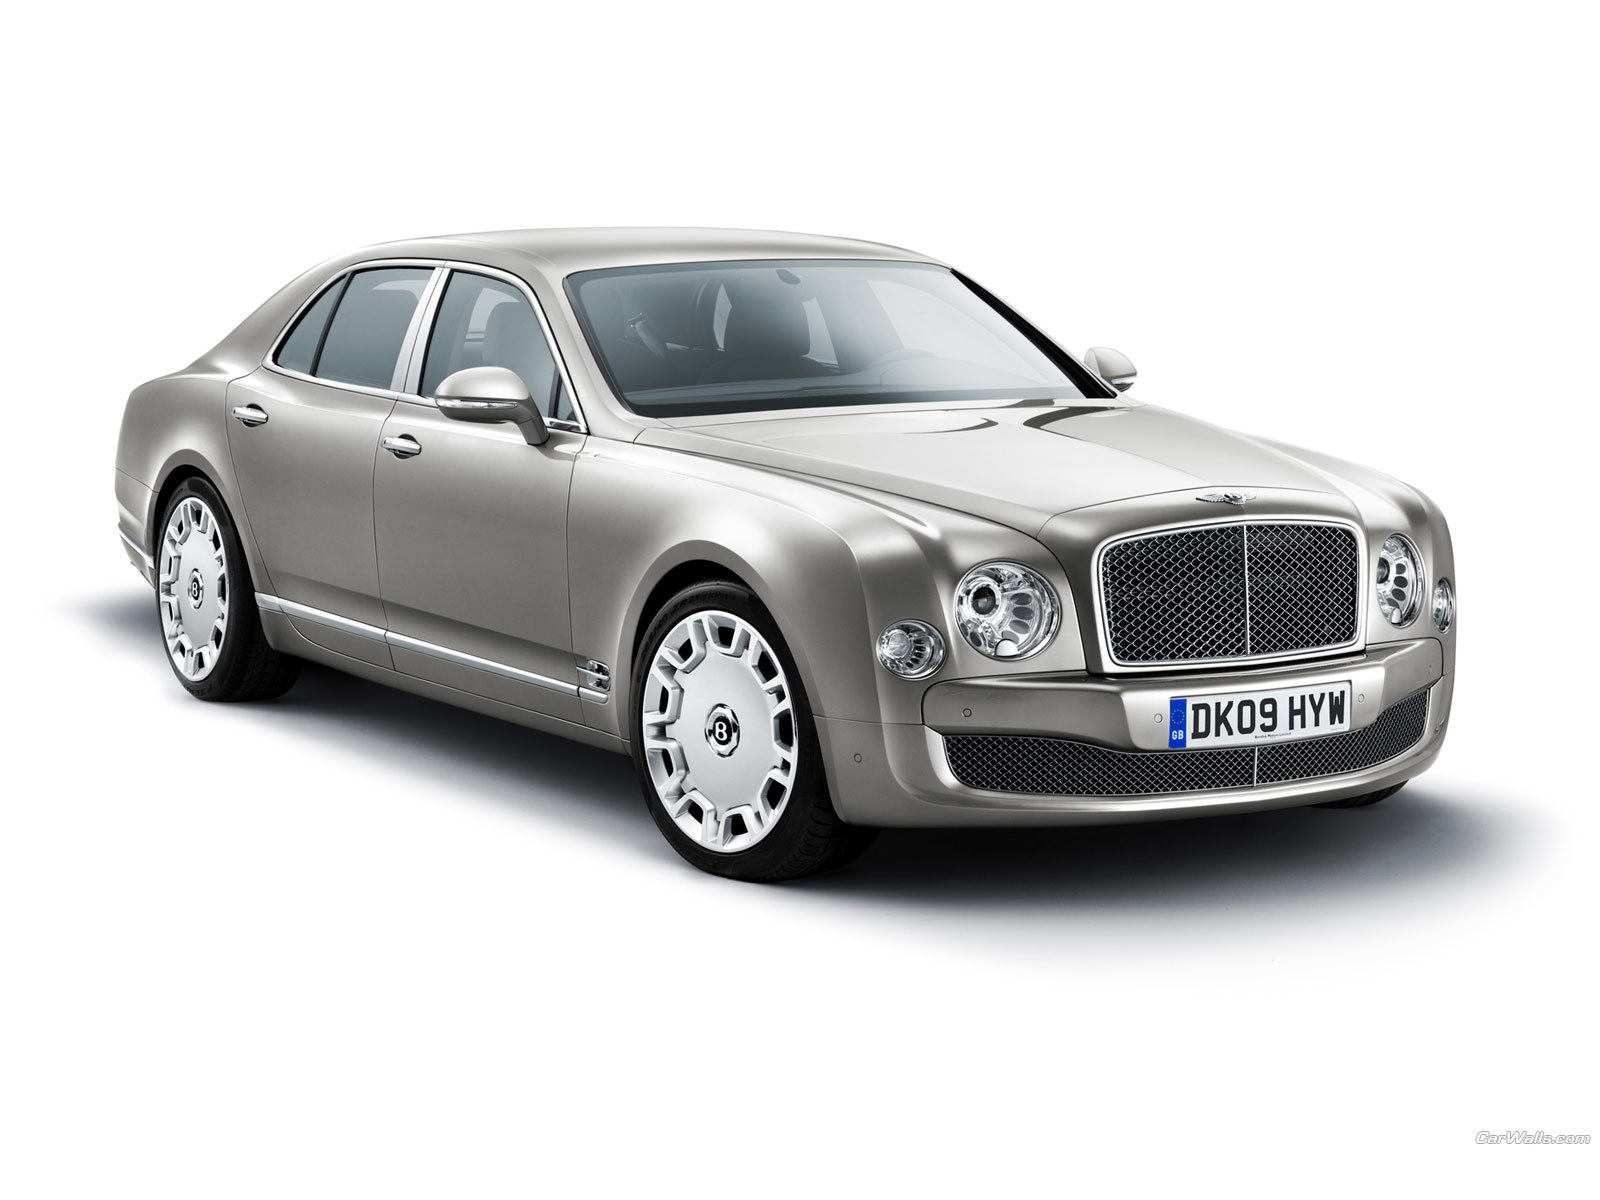 Descarga gratuita de fondo de pantalla para móvil de Bentley, Transporte, Automóvil.